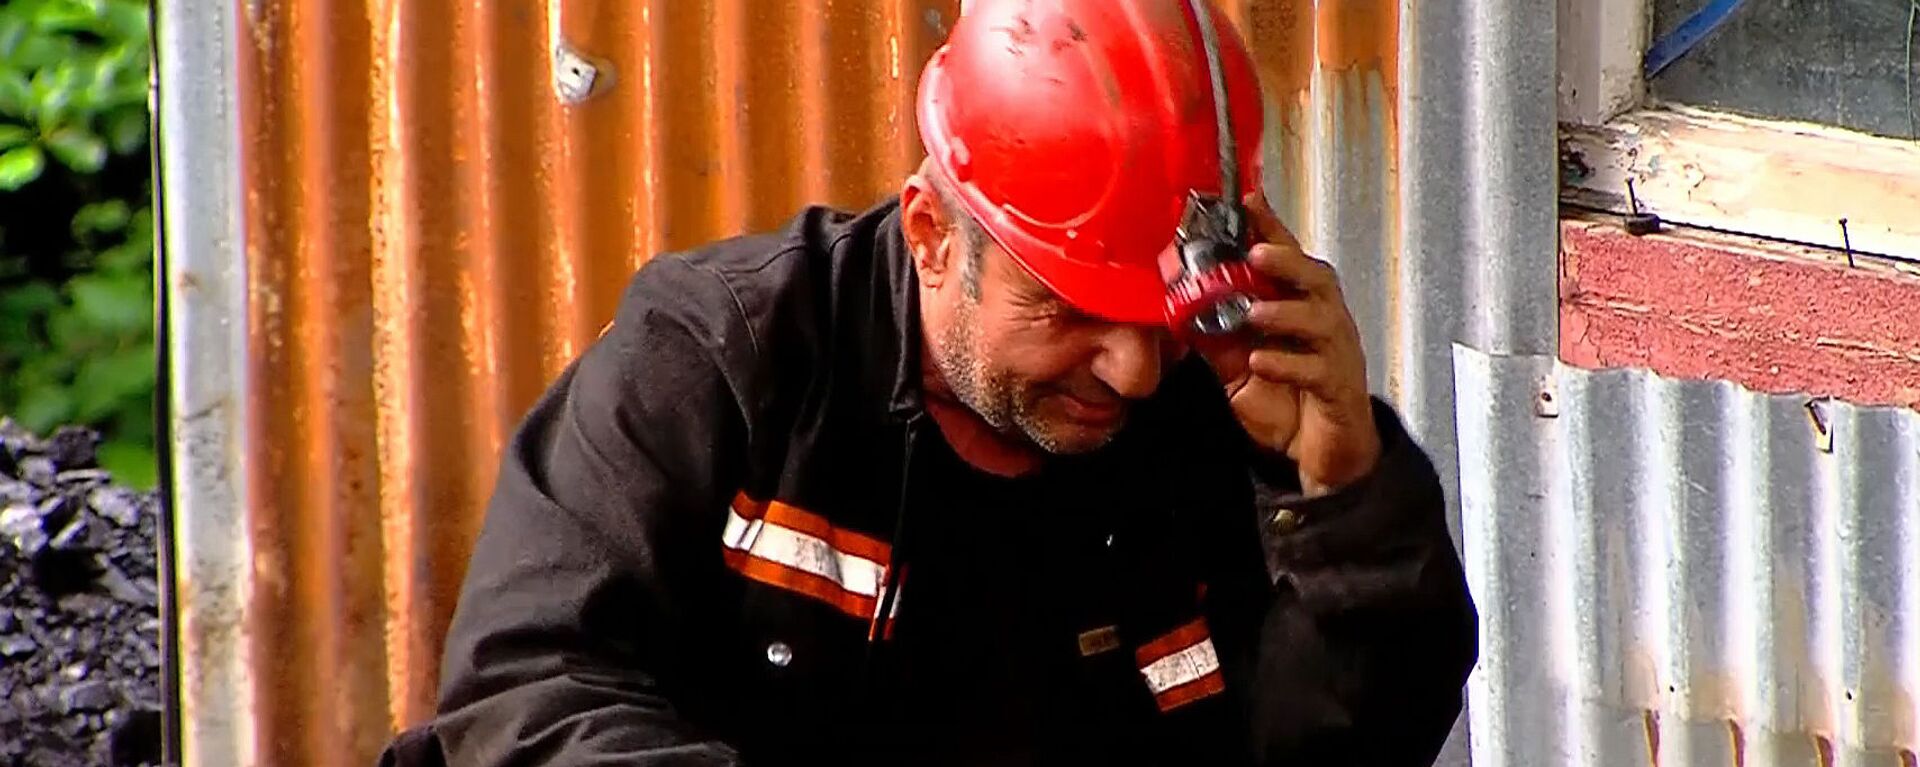 Один из шахтеров, который занимается добычей угля. Шахта в Ткибули, где произошел обвал - Sputnik Грузия, 1920, 16.06.2020